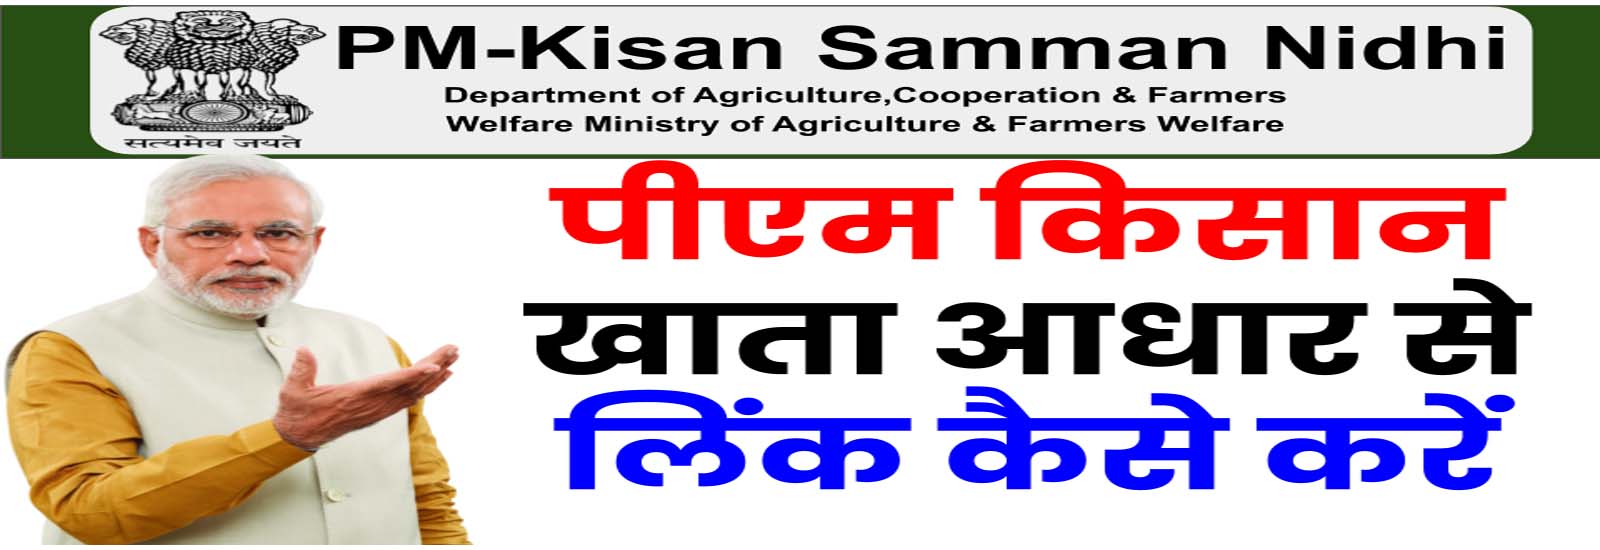 किसान सम्मान निधि योजना : Registration & Login | PM Kisan खाता आधार से लिंक कैसे करें?